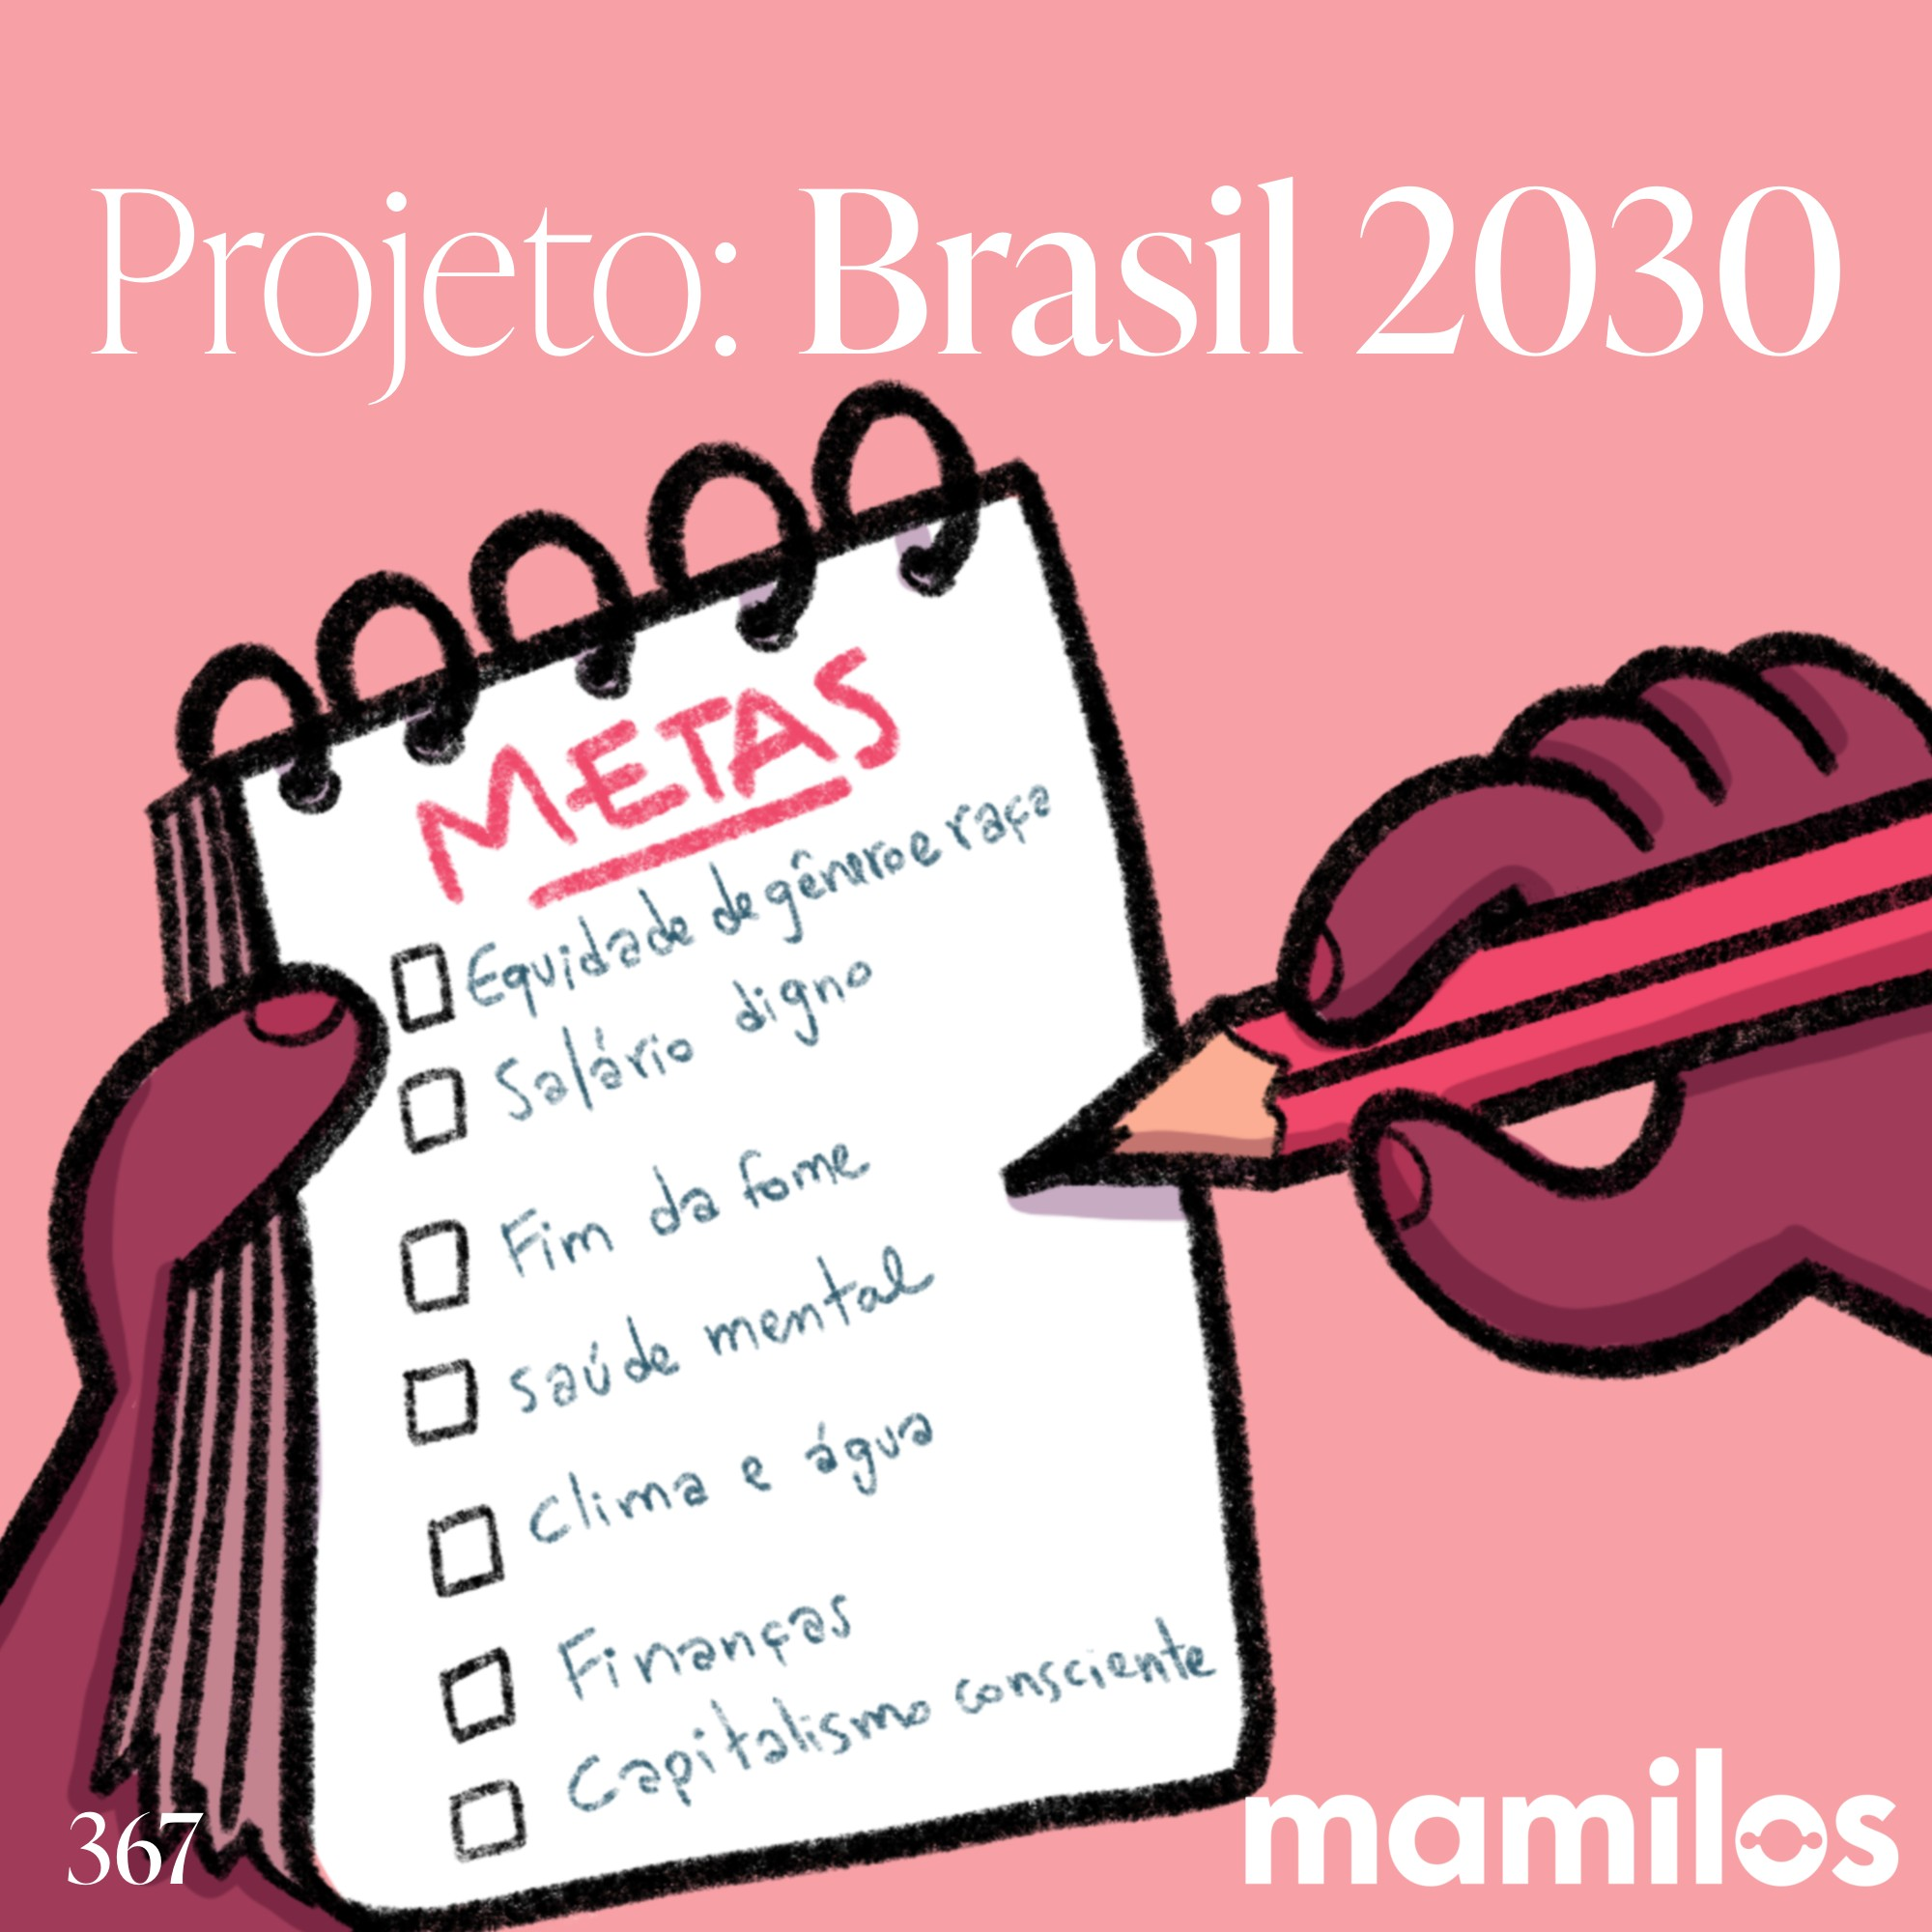 Projeto: Brasil 2030